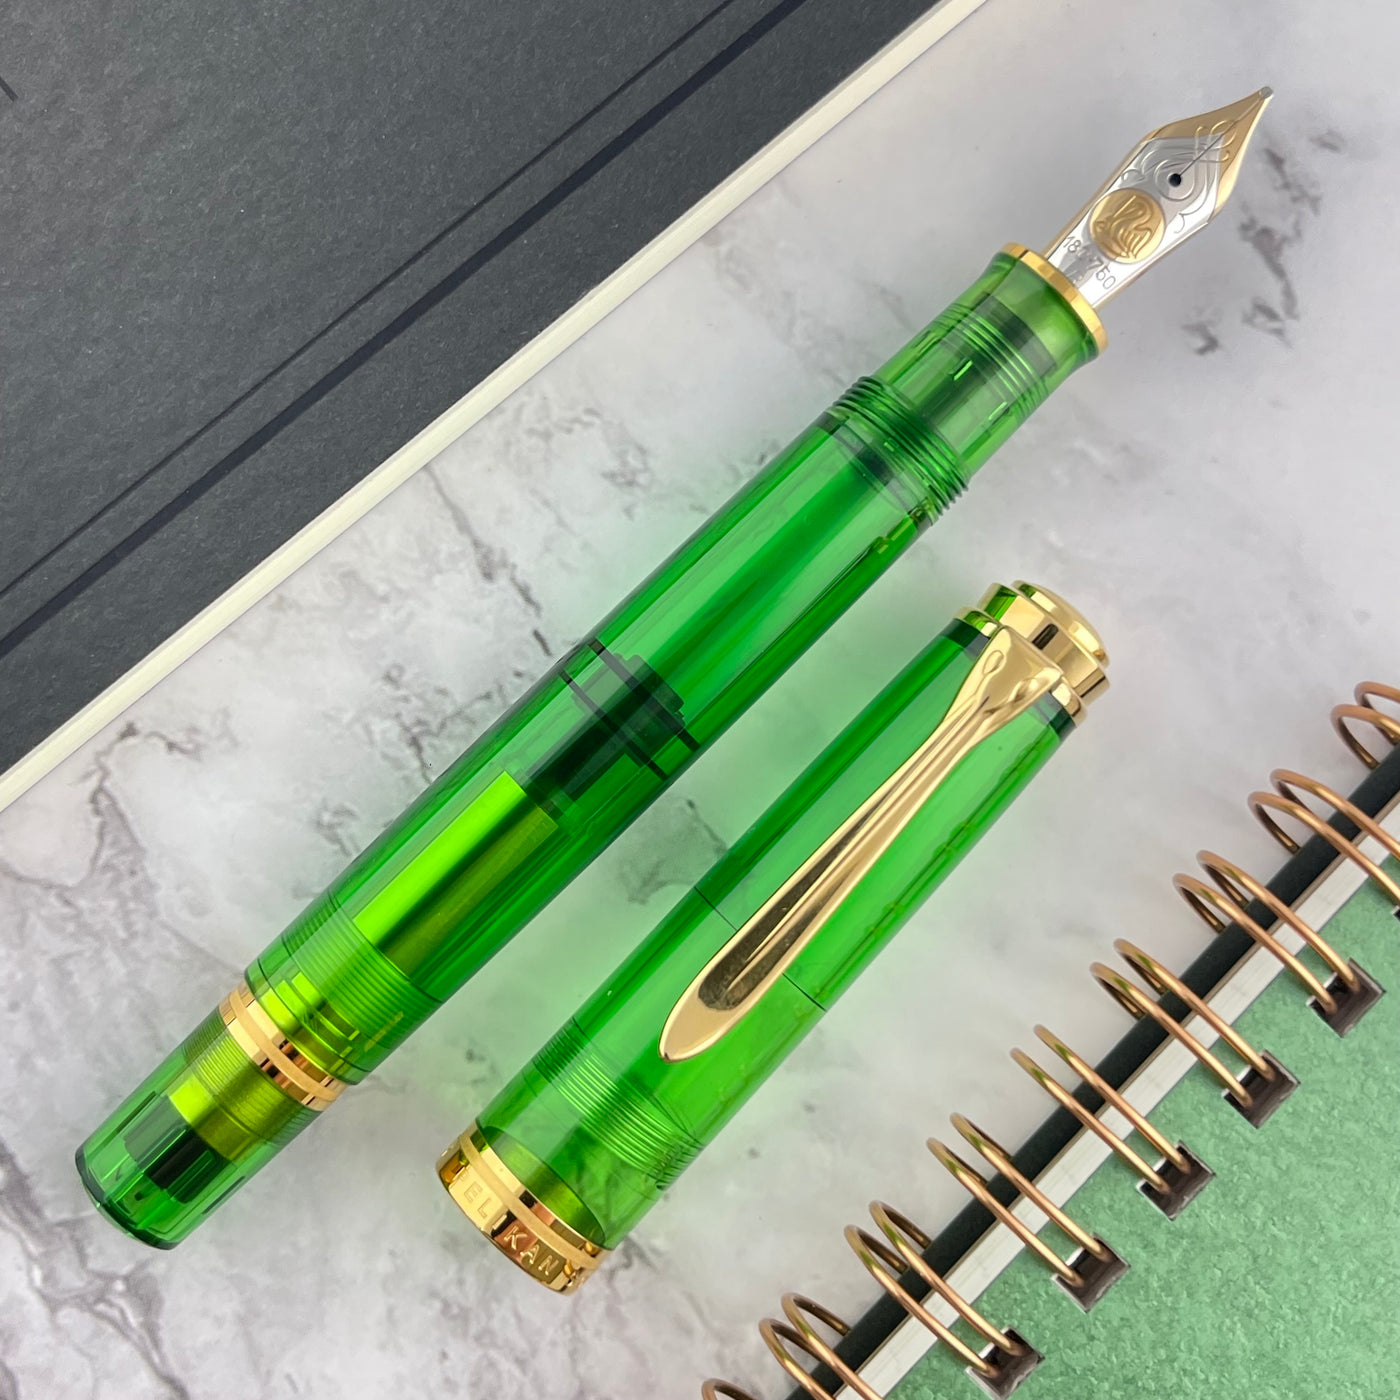 Pelikan Souveran M800 Fountain Pen - Green Demonstrator (Special Edition)